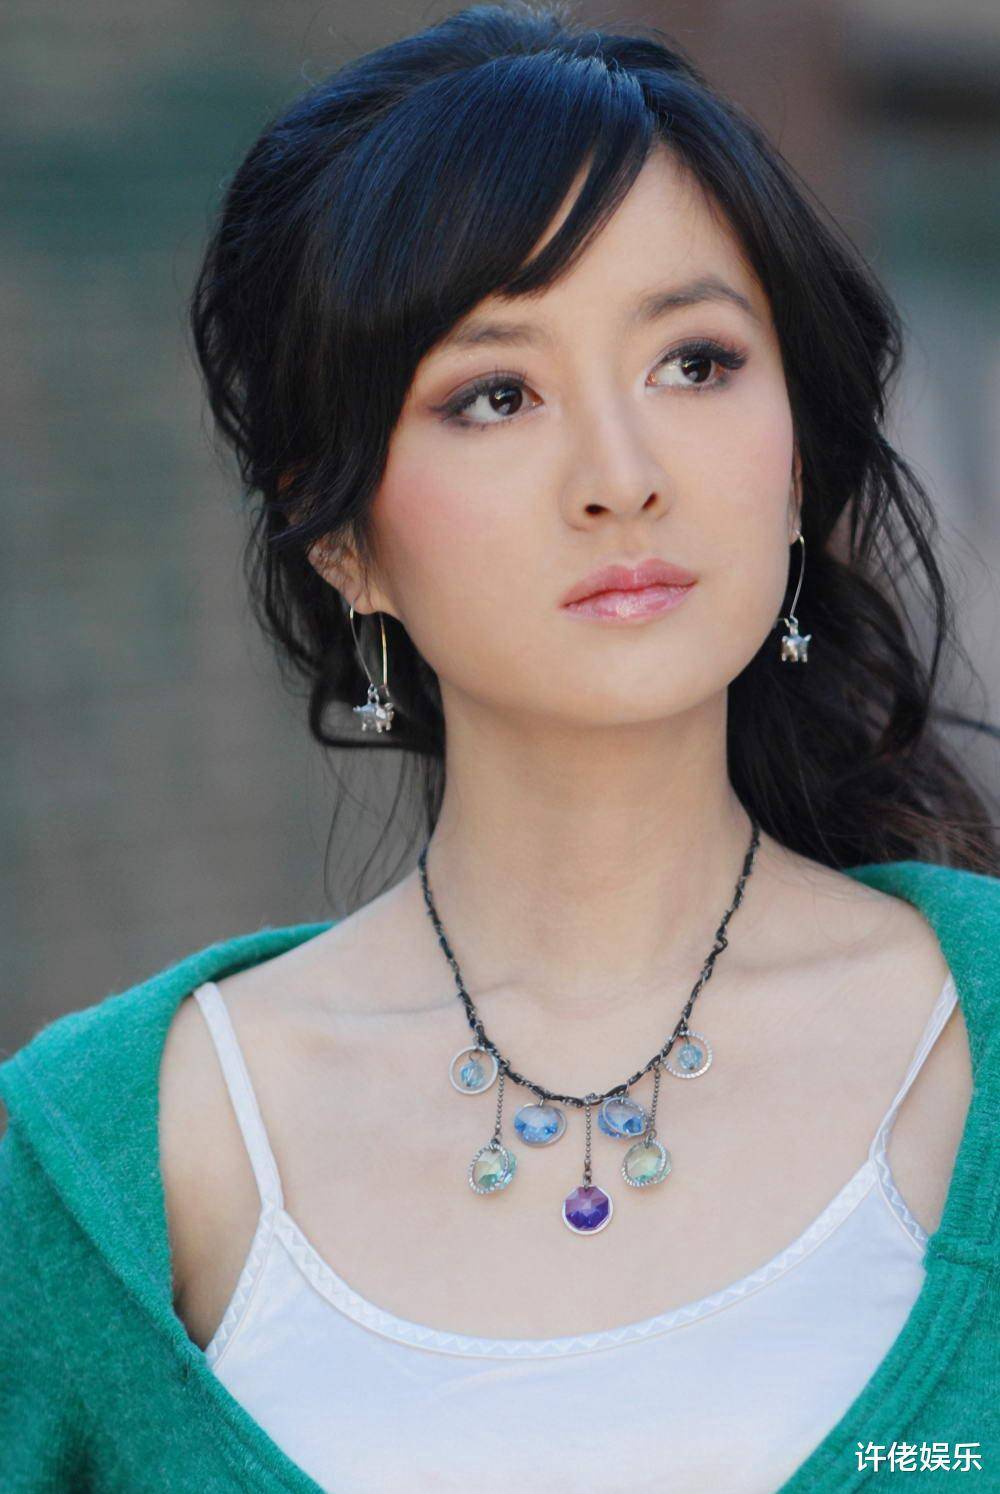 月22日出生于吉林长春,毕业于不列颠哥伦比亚大学,加拿大籍华裔女演员